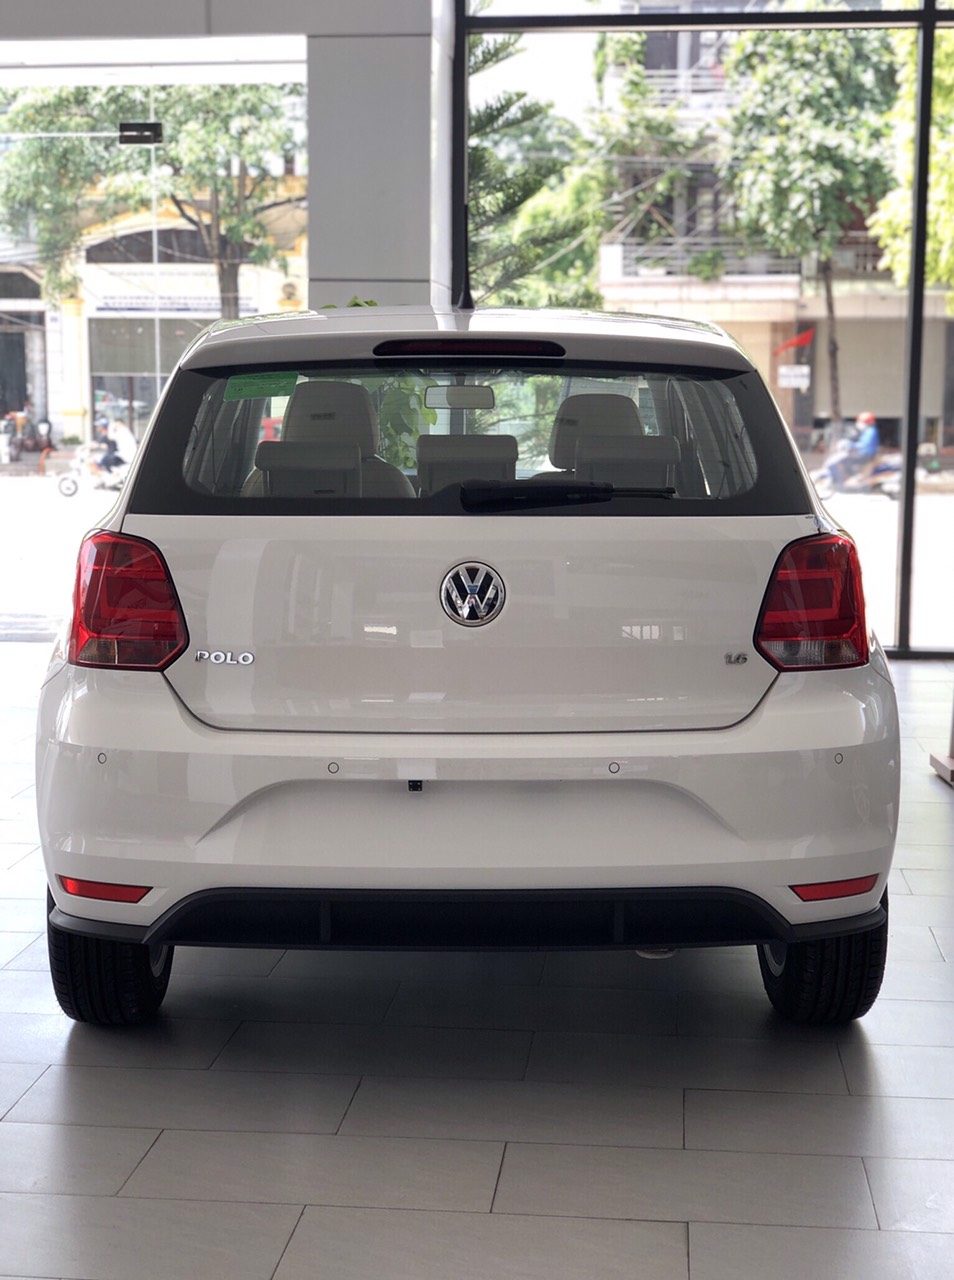 Volkswagen Polo Hatchback 2020 vua dòng xe đô thị - Xe sẵn giao ngay tháng 10-2